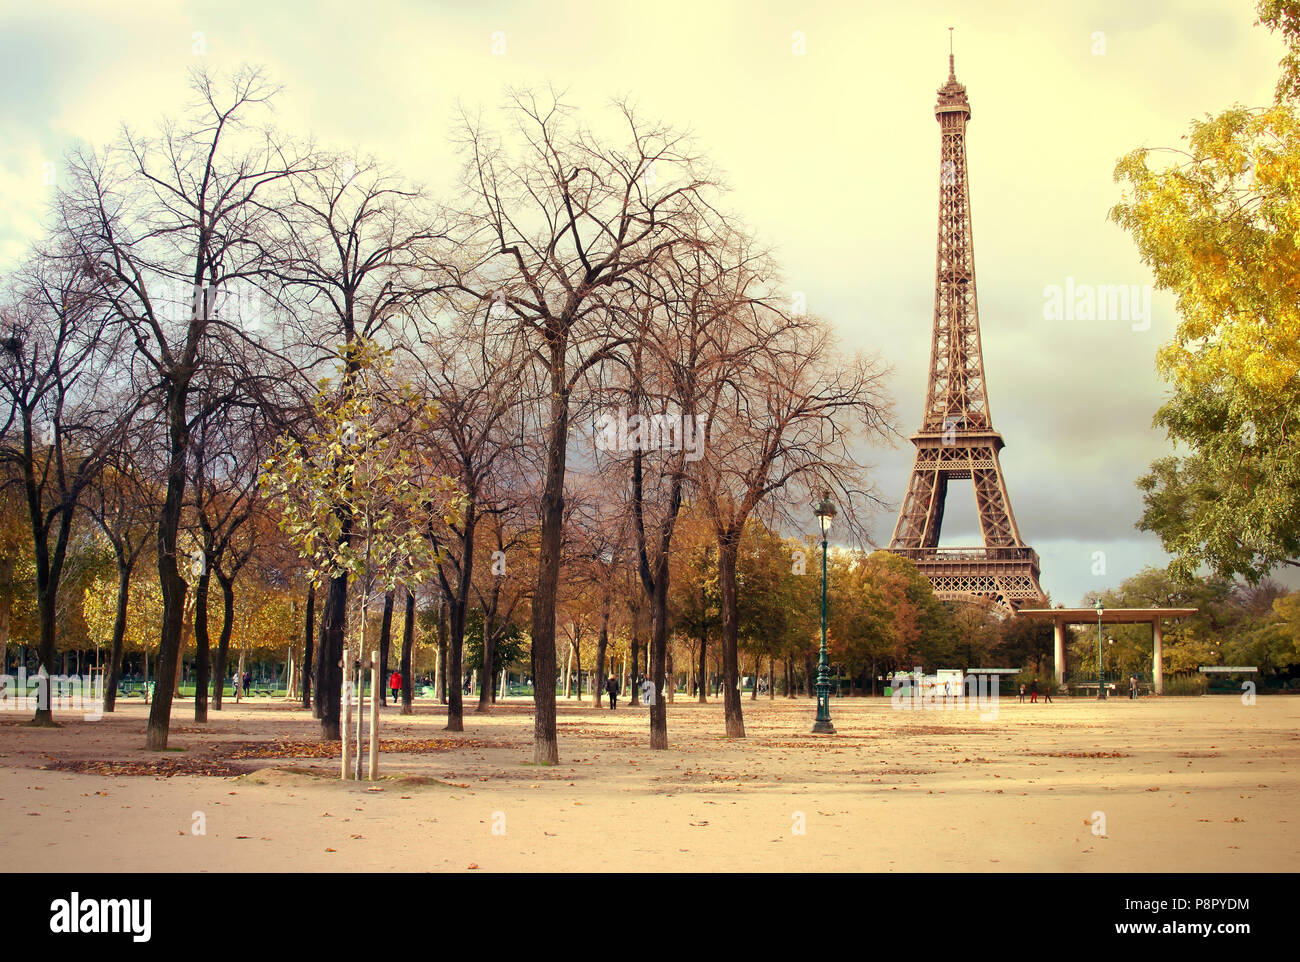 Vista de la torre Eiffel en París, cruzando el parque, artísticas filtro aplicado a la imagen Foto de stock